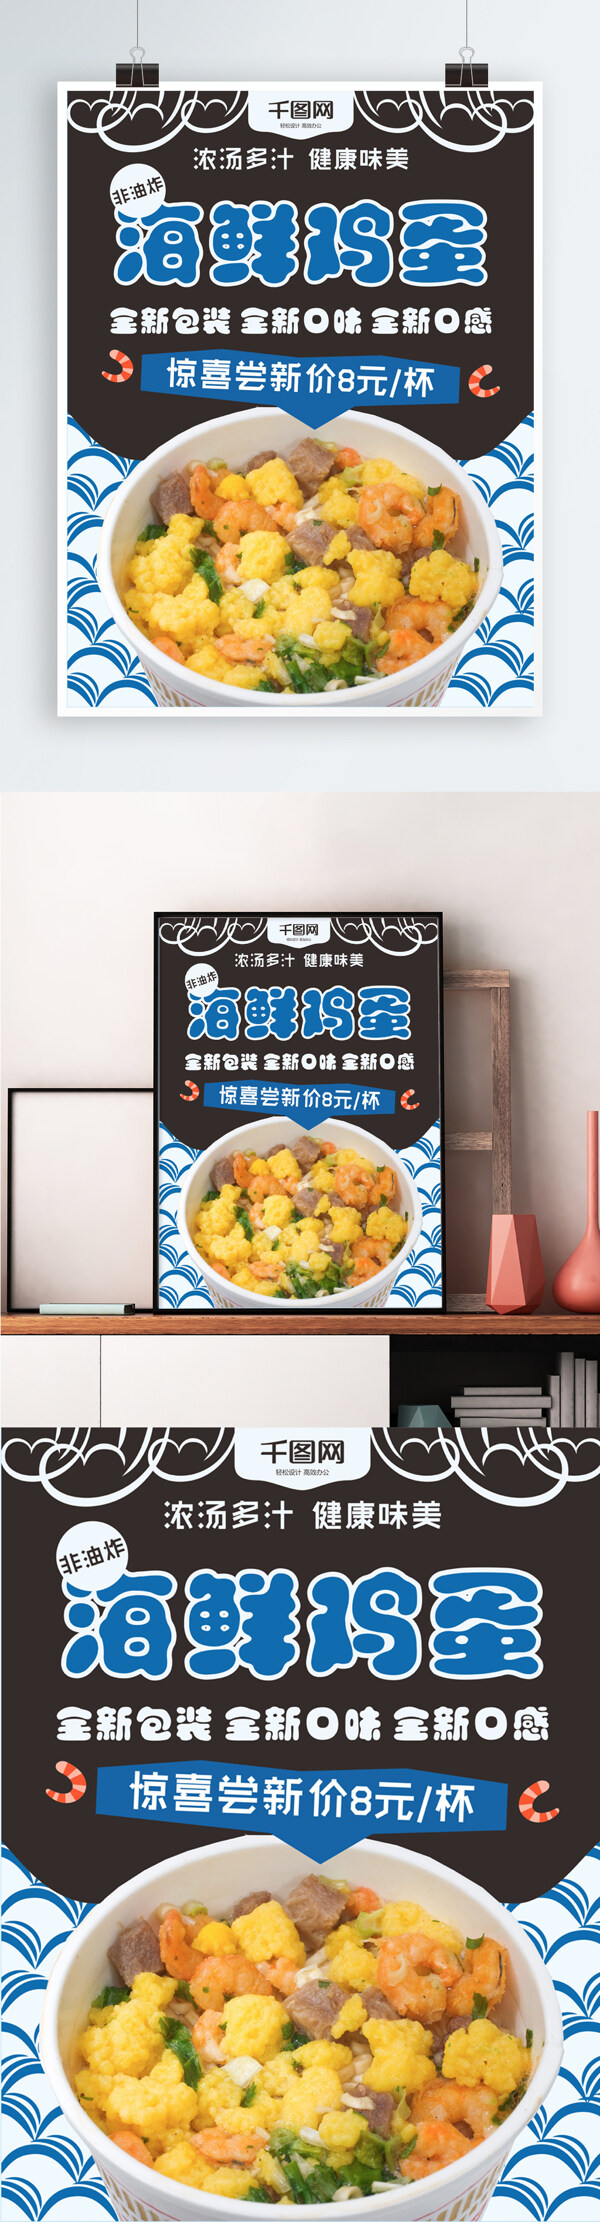 超市品牌方便面简约日系美食海报